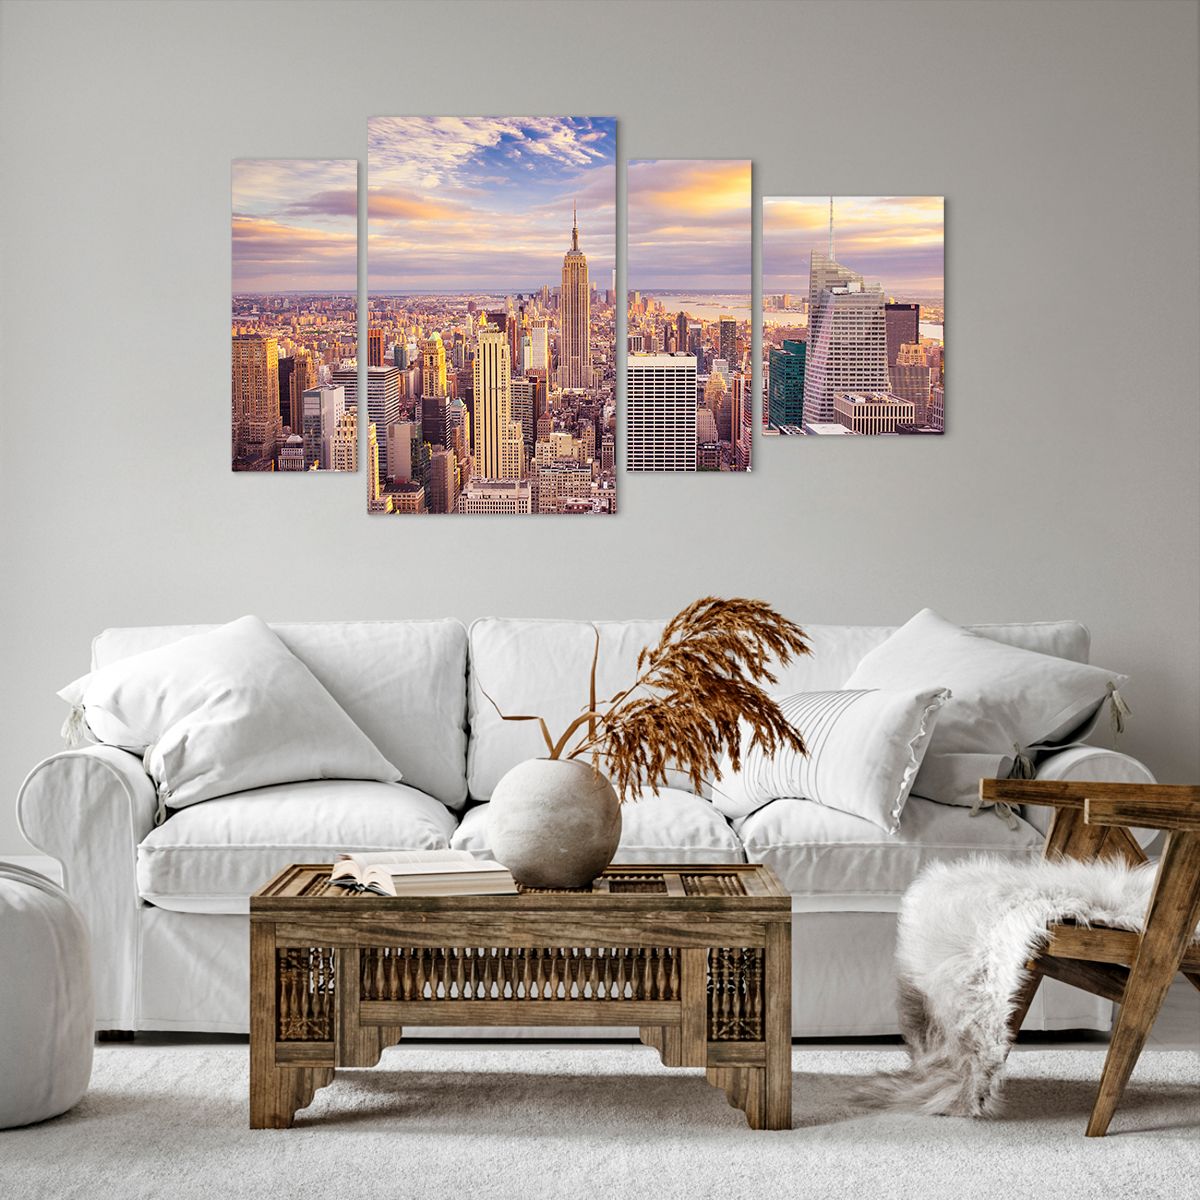 Obrazy na płótnie Miasto, Obrazy na płótnie Nowy Jork, Obrazy na płótnie Architektura, Obrazy na płótnie Drapacz Chmur, Obrazy na płótnie Usa